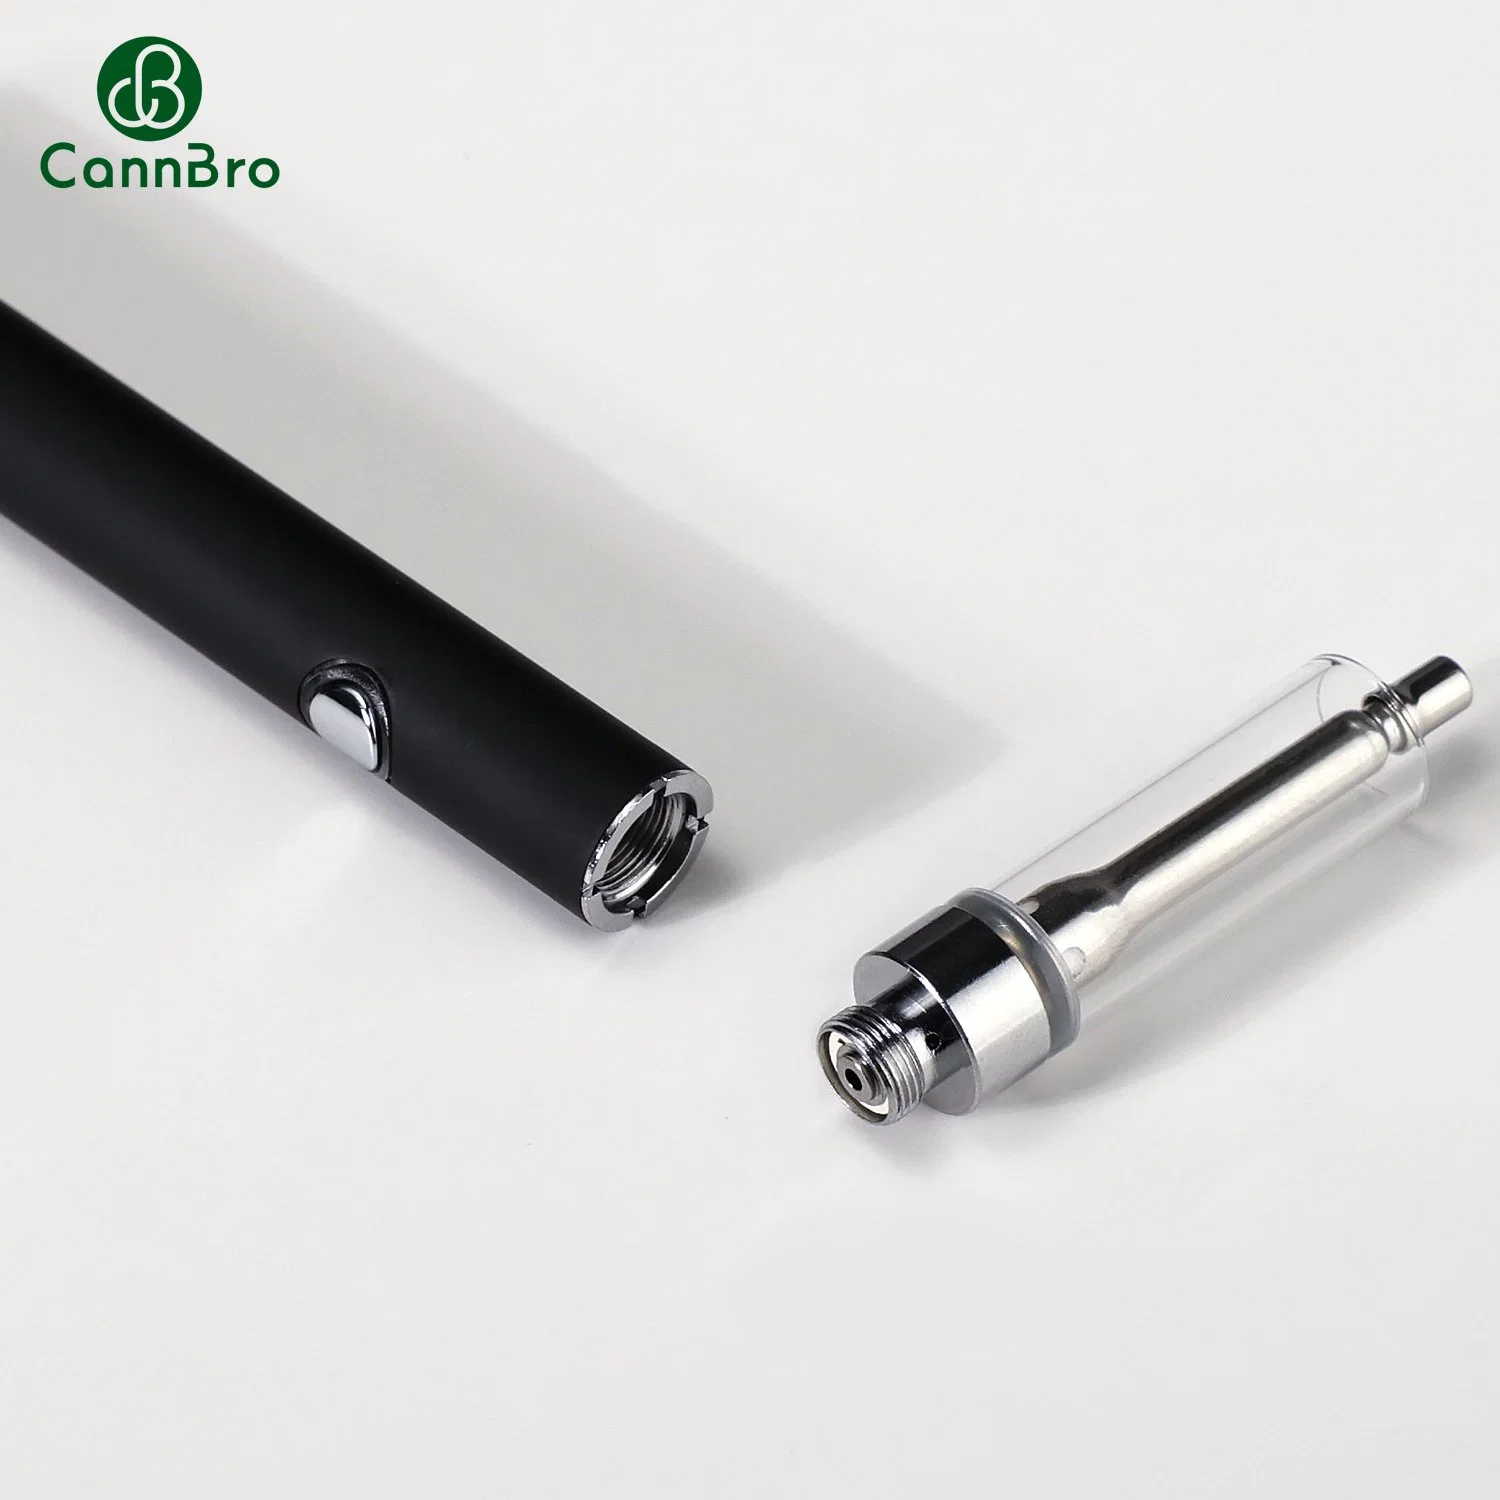 Vente en gros Vape jetable stylo vide cartouche Cannbro jetable E cigarette Batterie pour cigarettes électroniques Vape Mini Mod 290 mAh Vape Battery